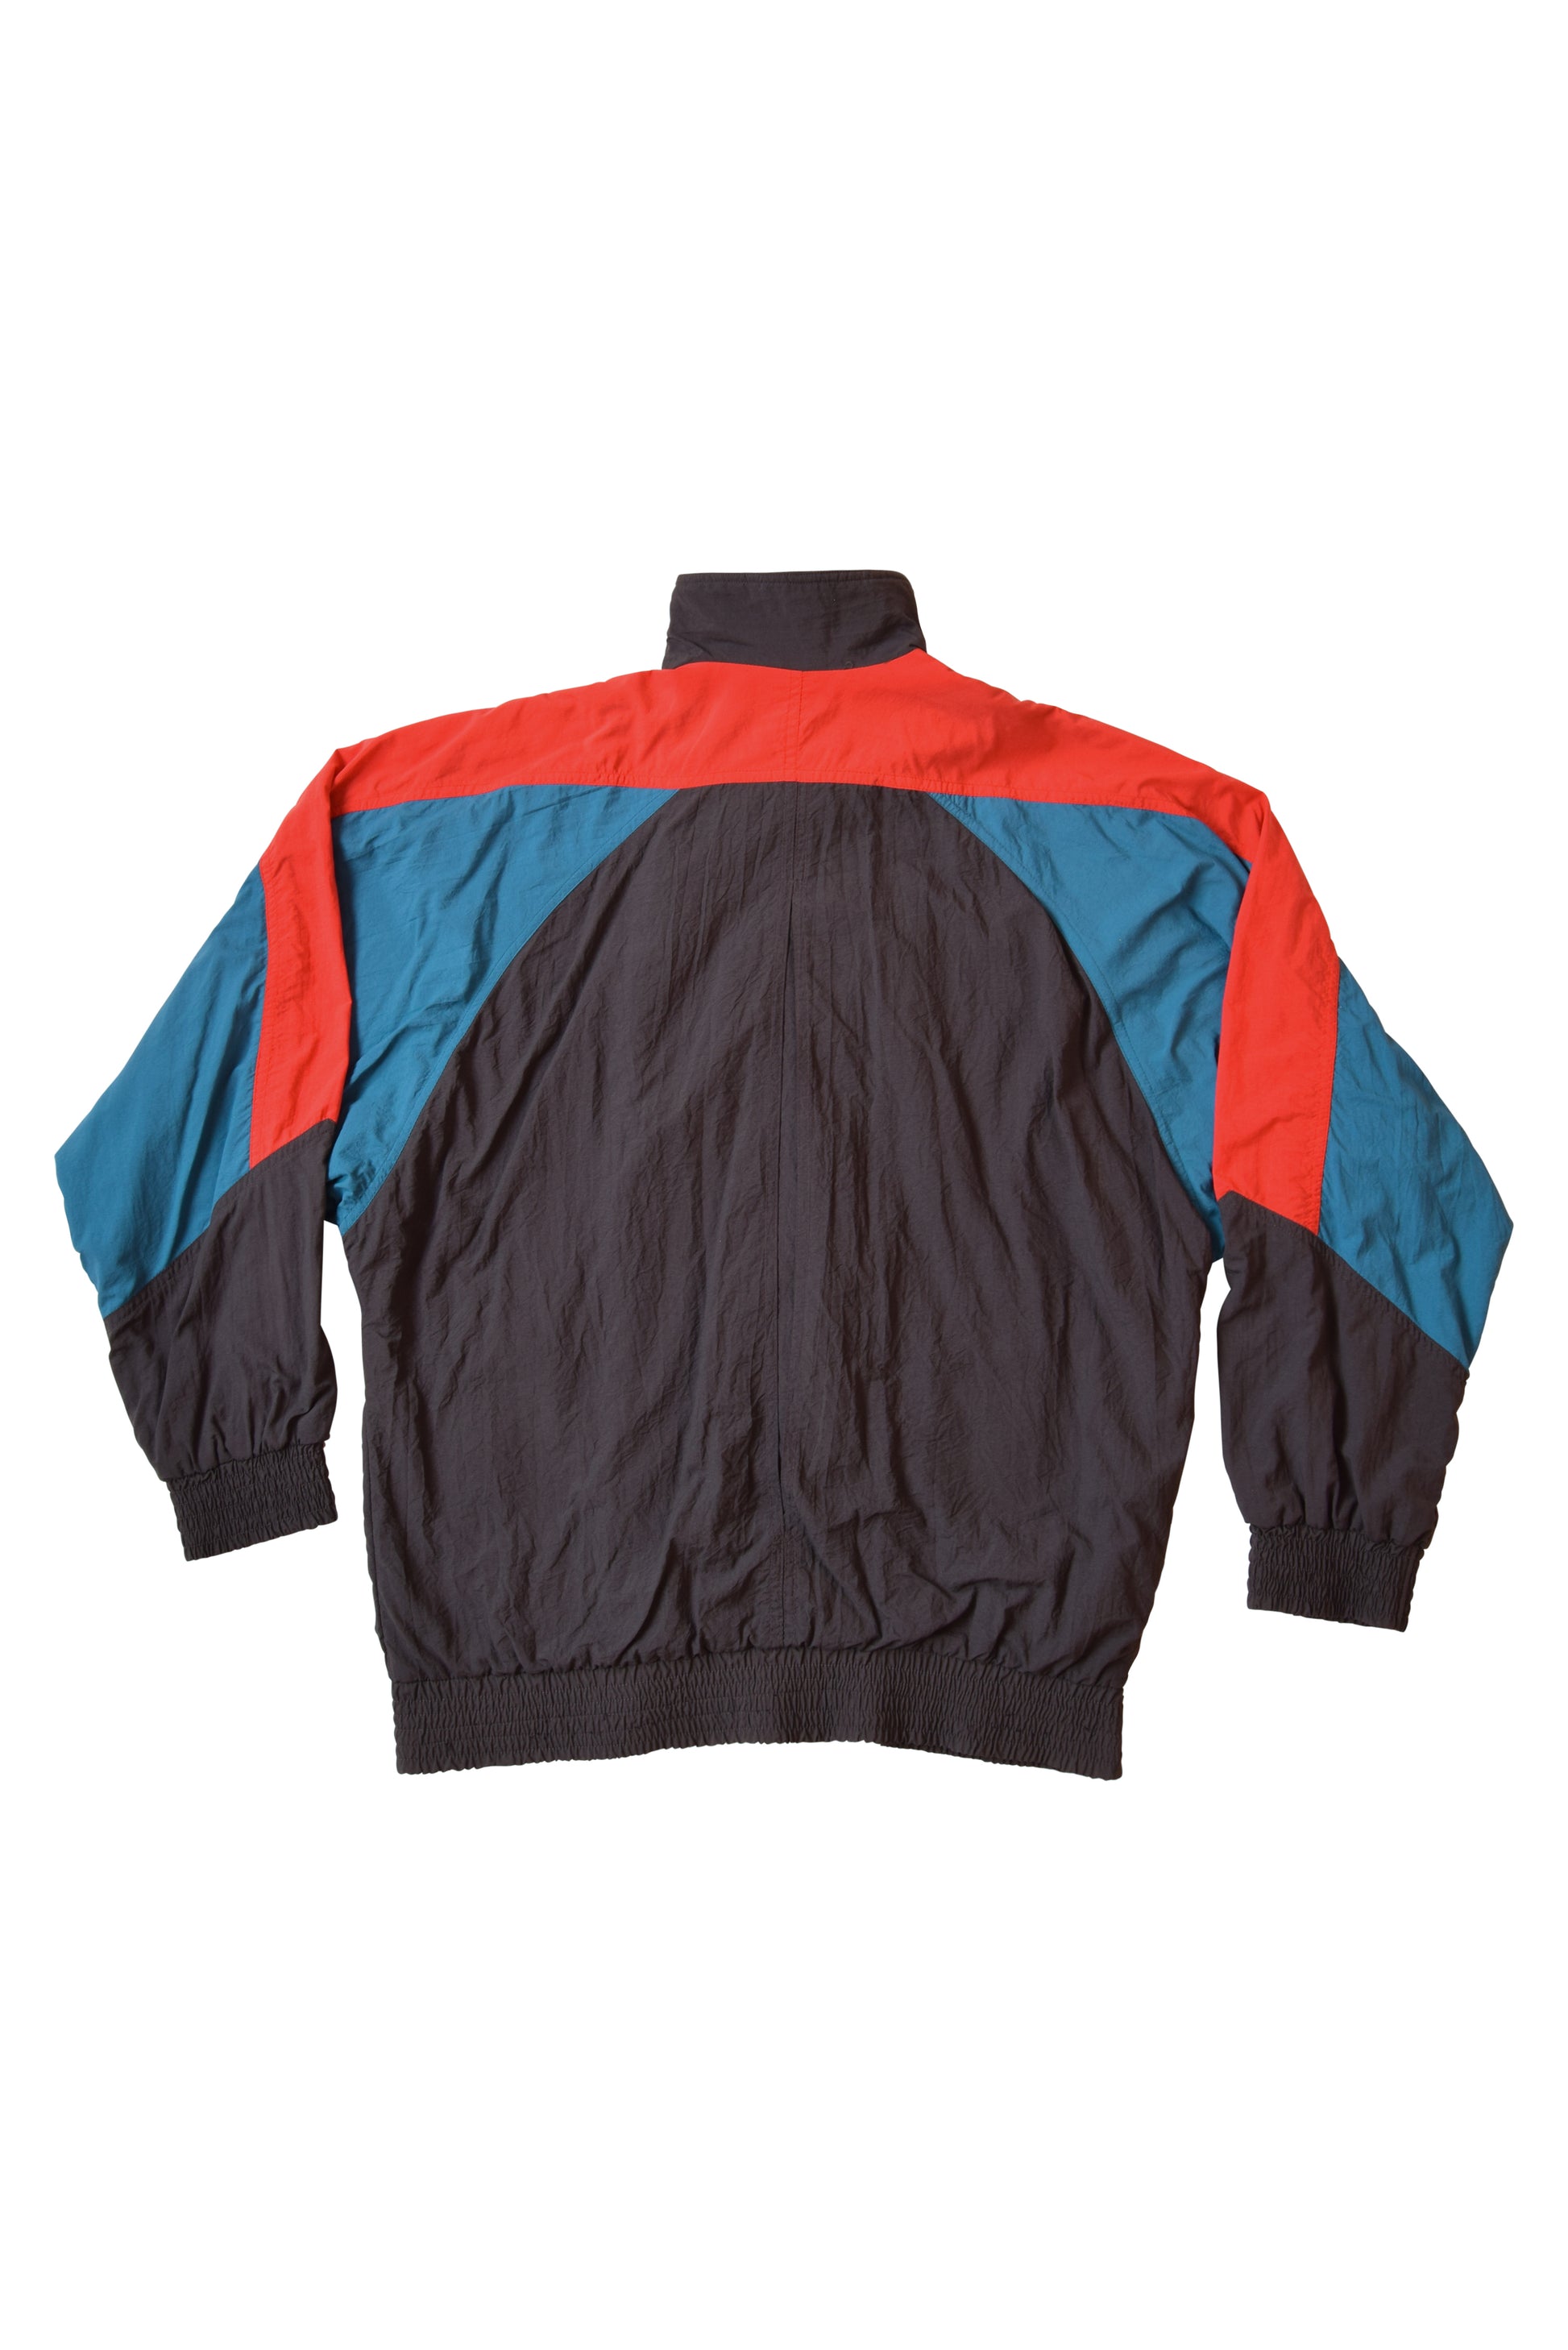 Vintage Adidas 90's Jacket